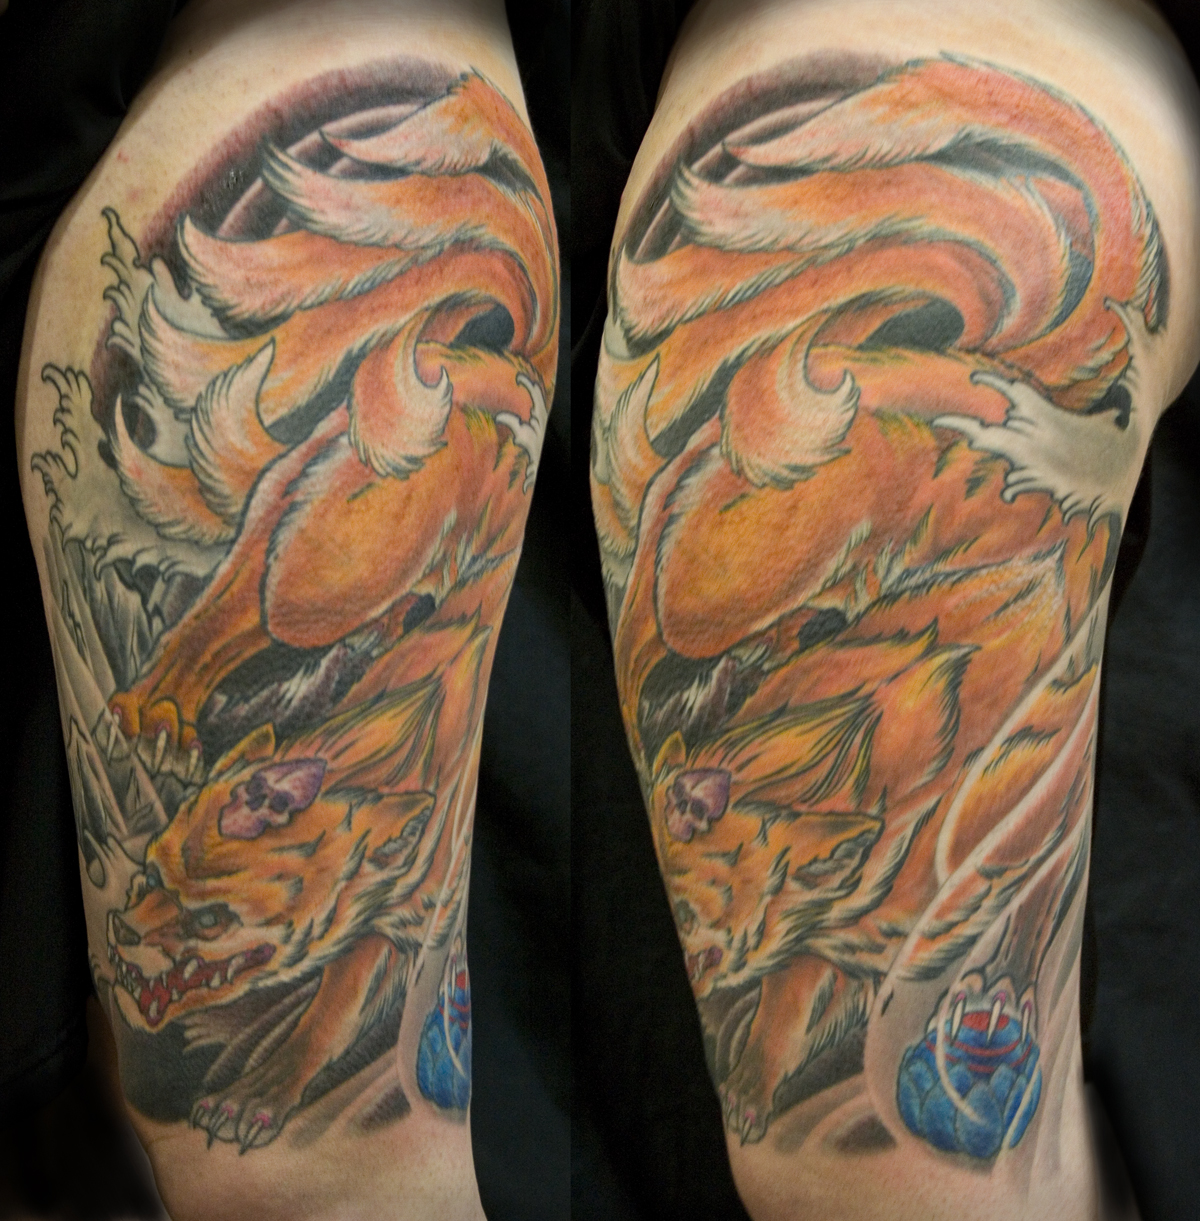 Iron Cypress | Japanese Kitsune Tattoo by Chris Walkin of Iron Cypress